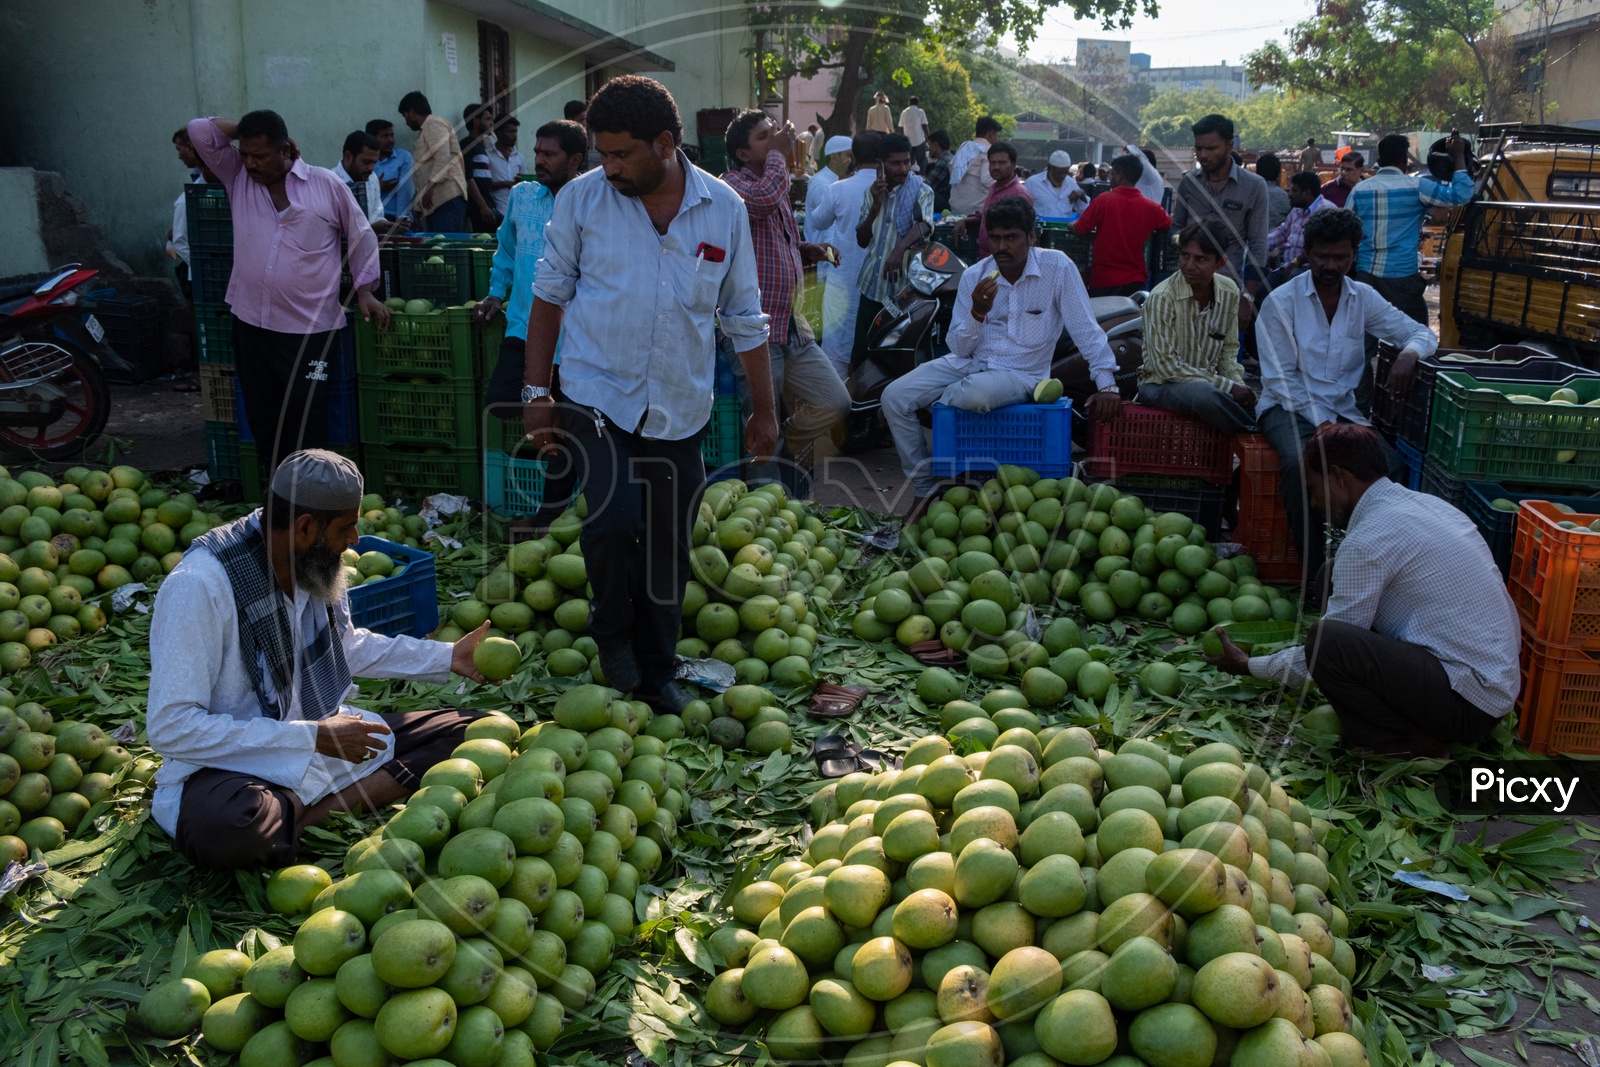 Selling mangoes at Kothapet Fruit market, Dilsukhnagar, Hyderabad.